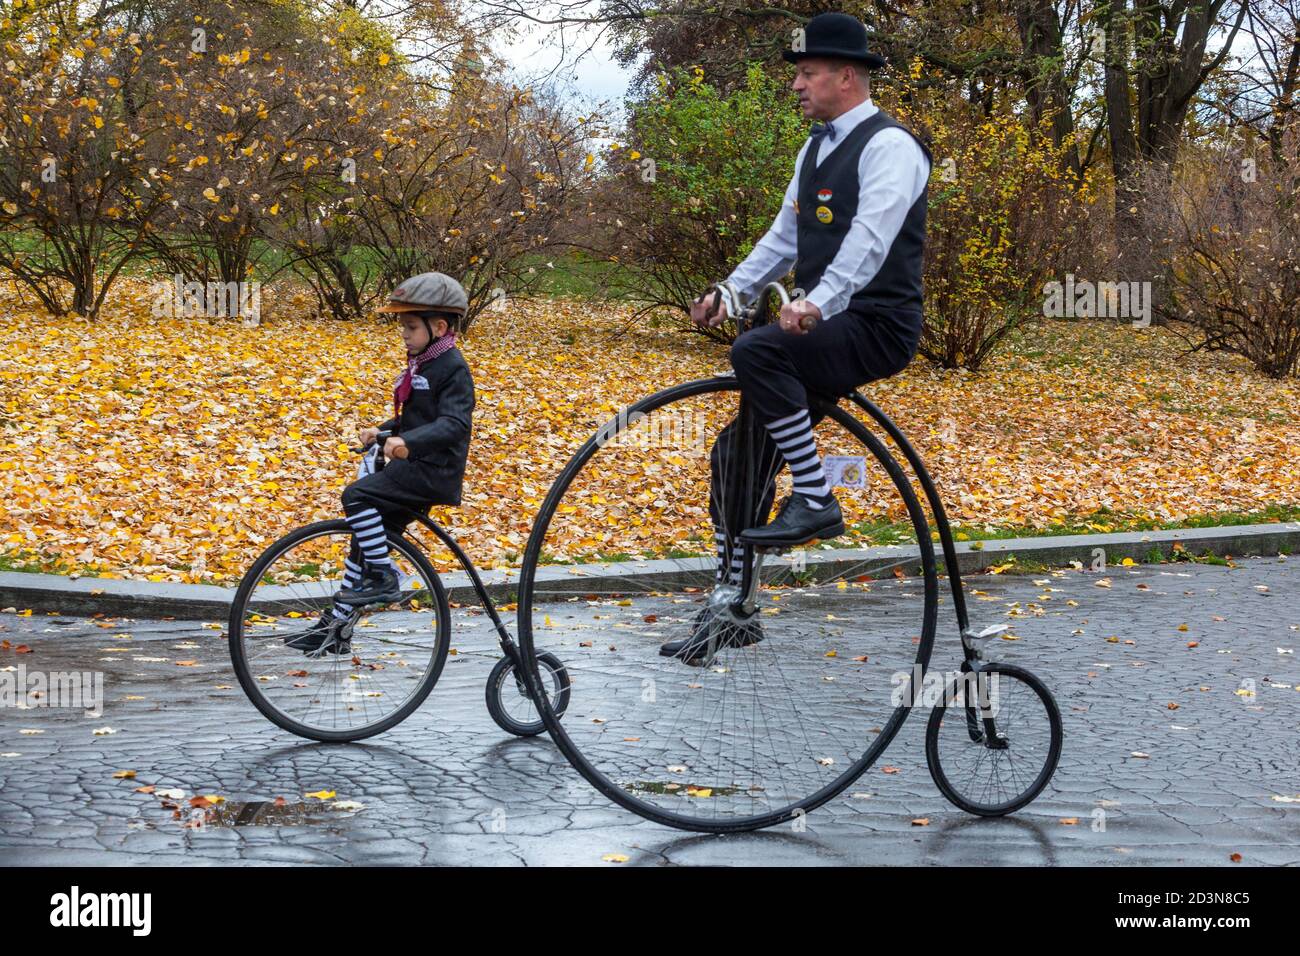 Zwei Radfahrer, Mann Reiten Penny-Farthing Fahrrad Kind Menschen traditionelle Zeit Kleid Kostüm Stockfoto